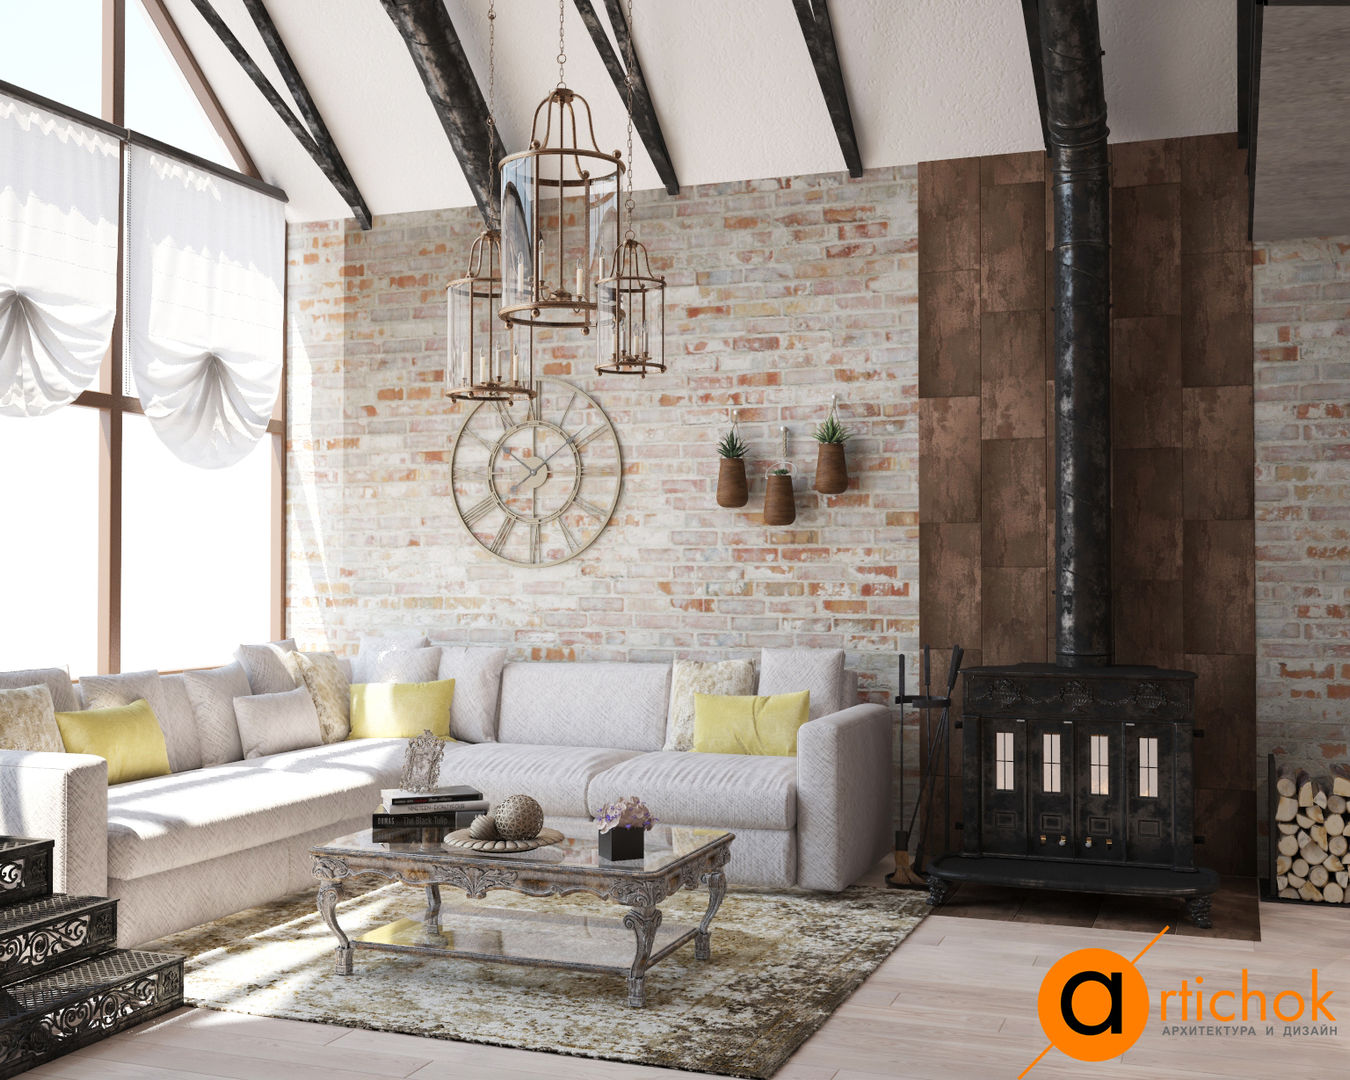 Атмосфера комфорта с изюминкой: кованые изделия, Artichok Design Artichok Design Industrial style living room Bricks